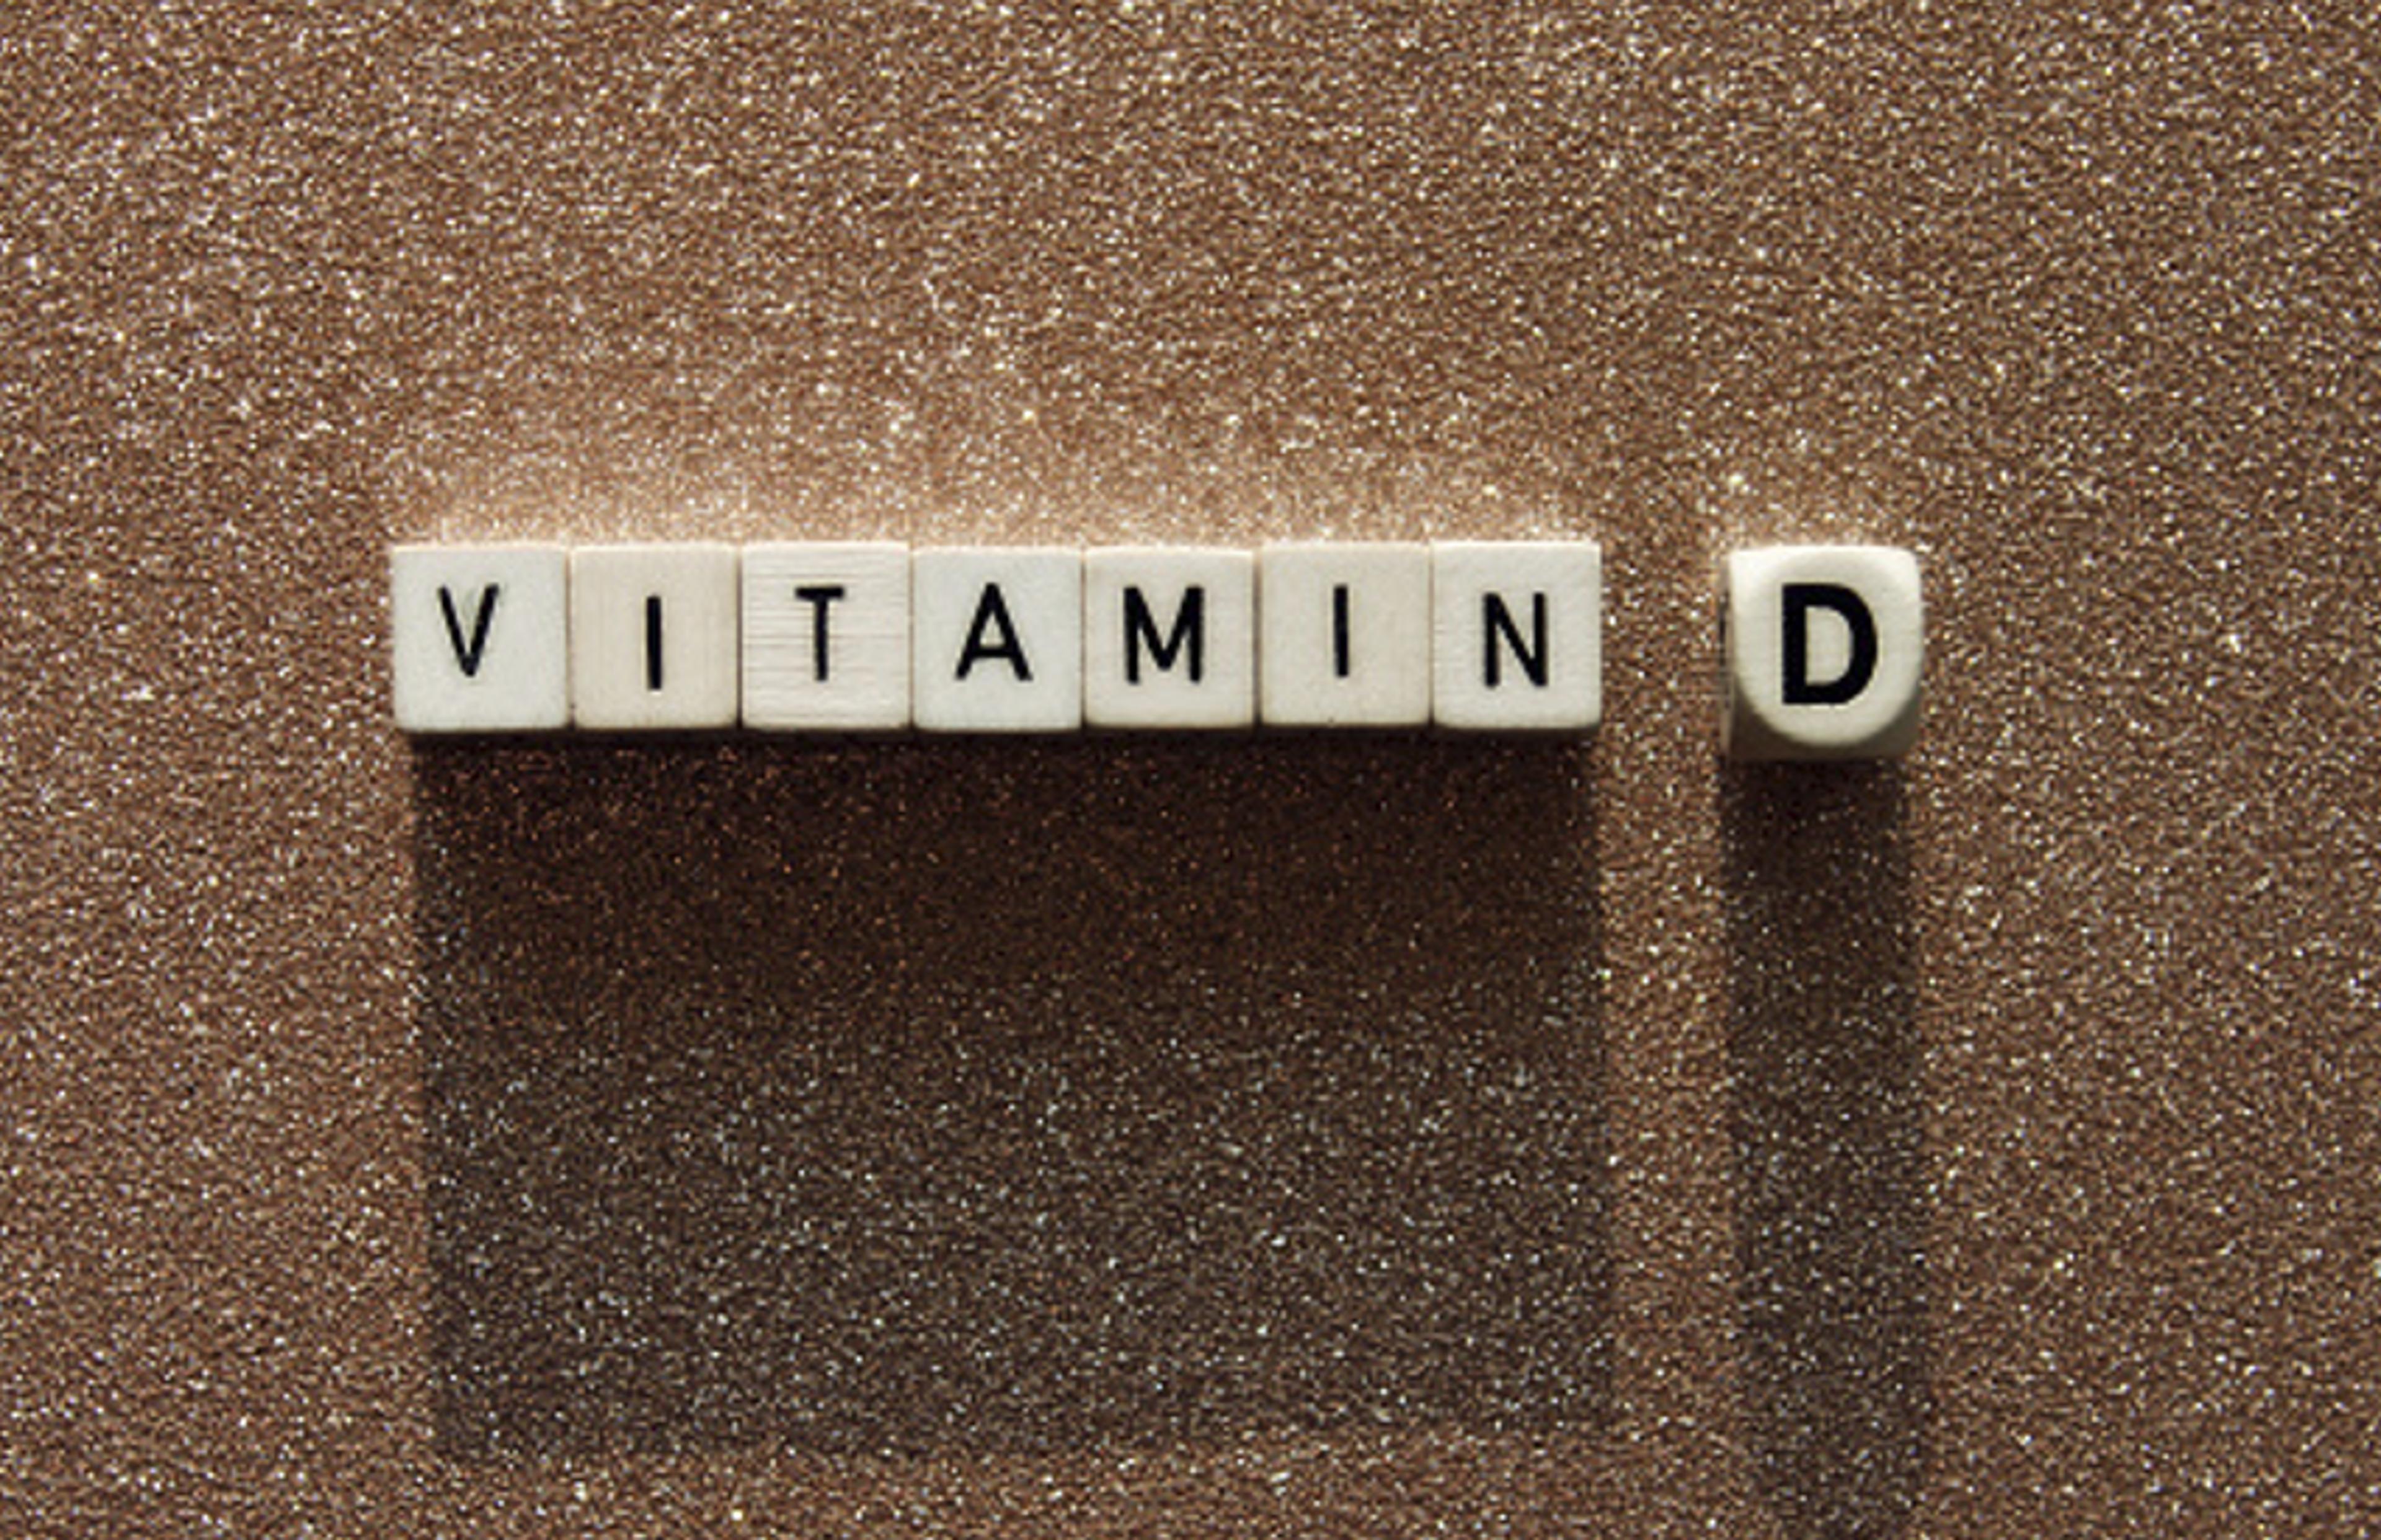 Vitamin D: विटामिन डी की कमी से जल्द आता है बुढ़ापा, कमजाेर हाेती हैं हड्डियां